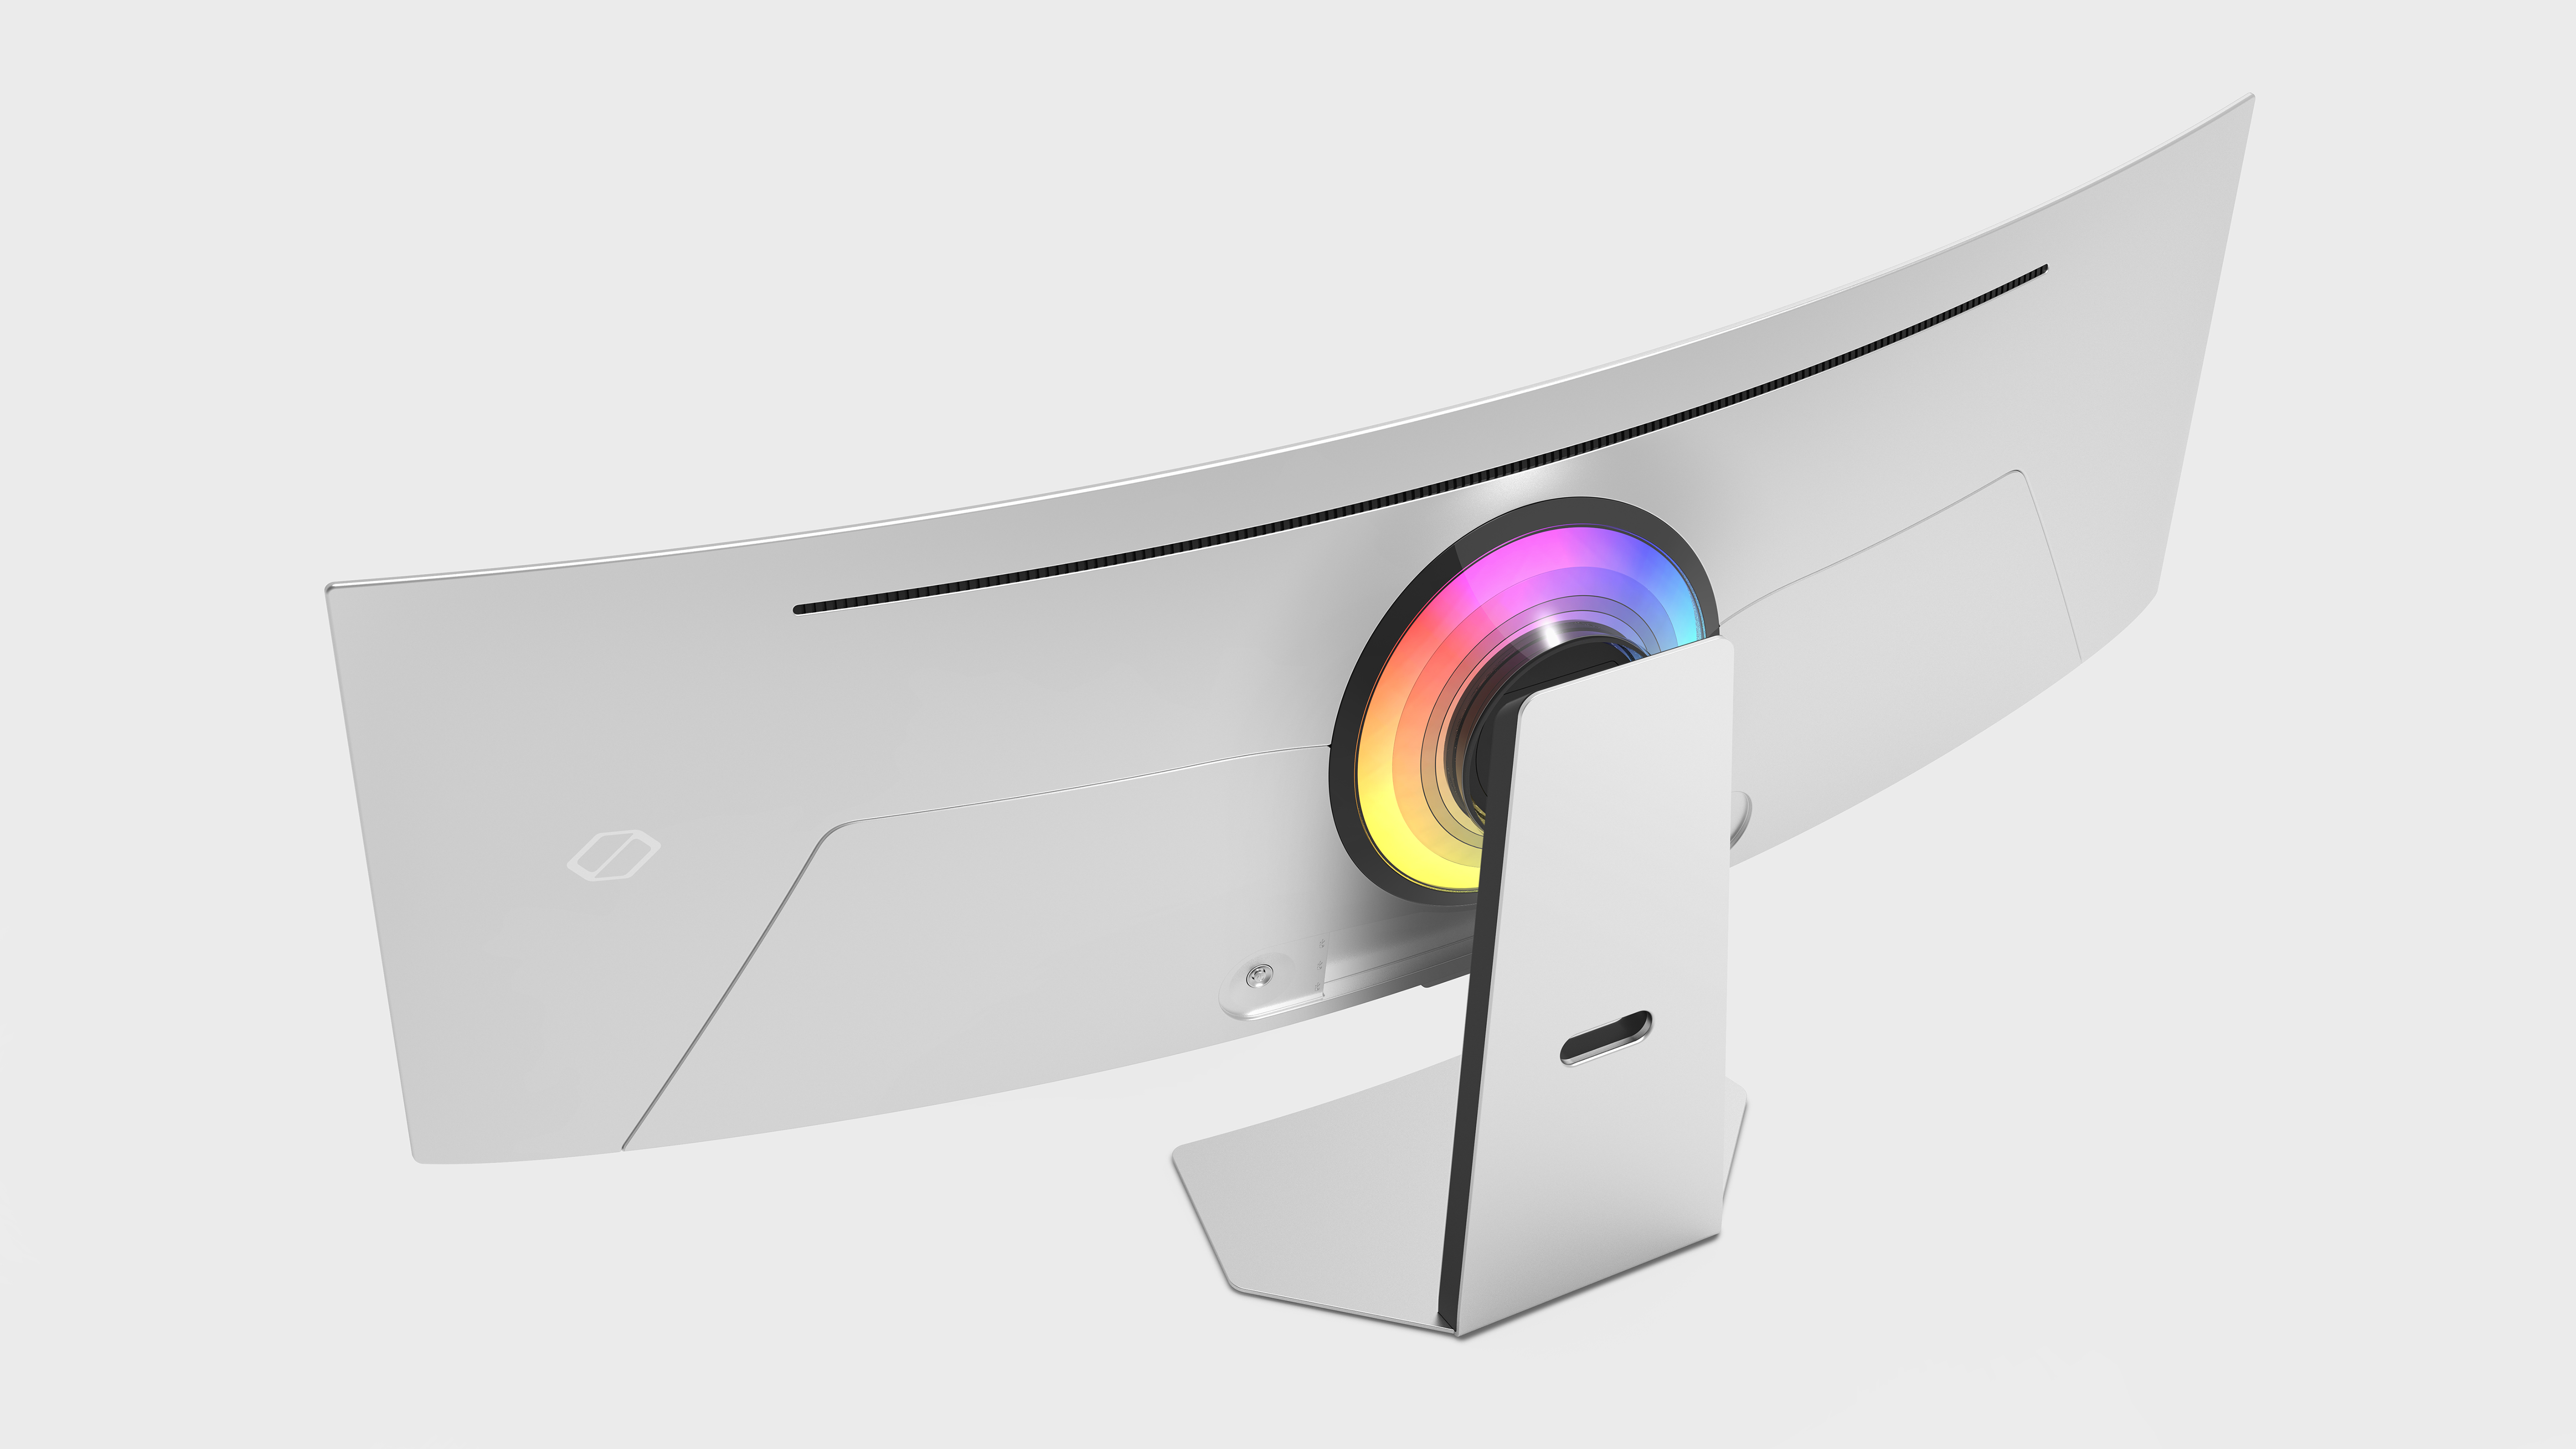 Et promobillede af den buede Samsung Odyssey OLED G9-skærm vist bagfra mod en hvid baggrund